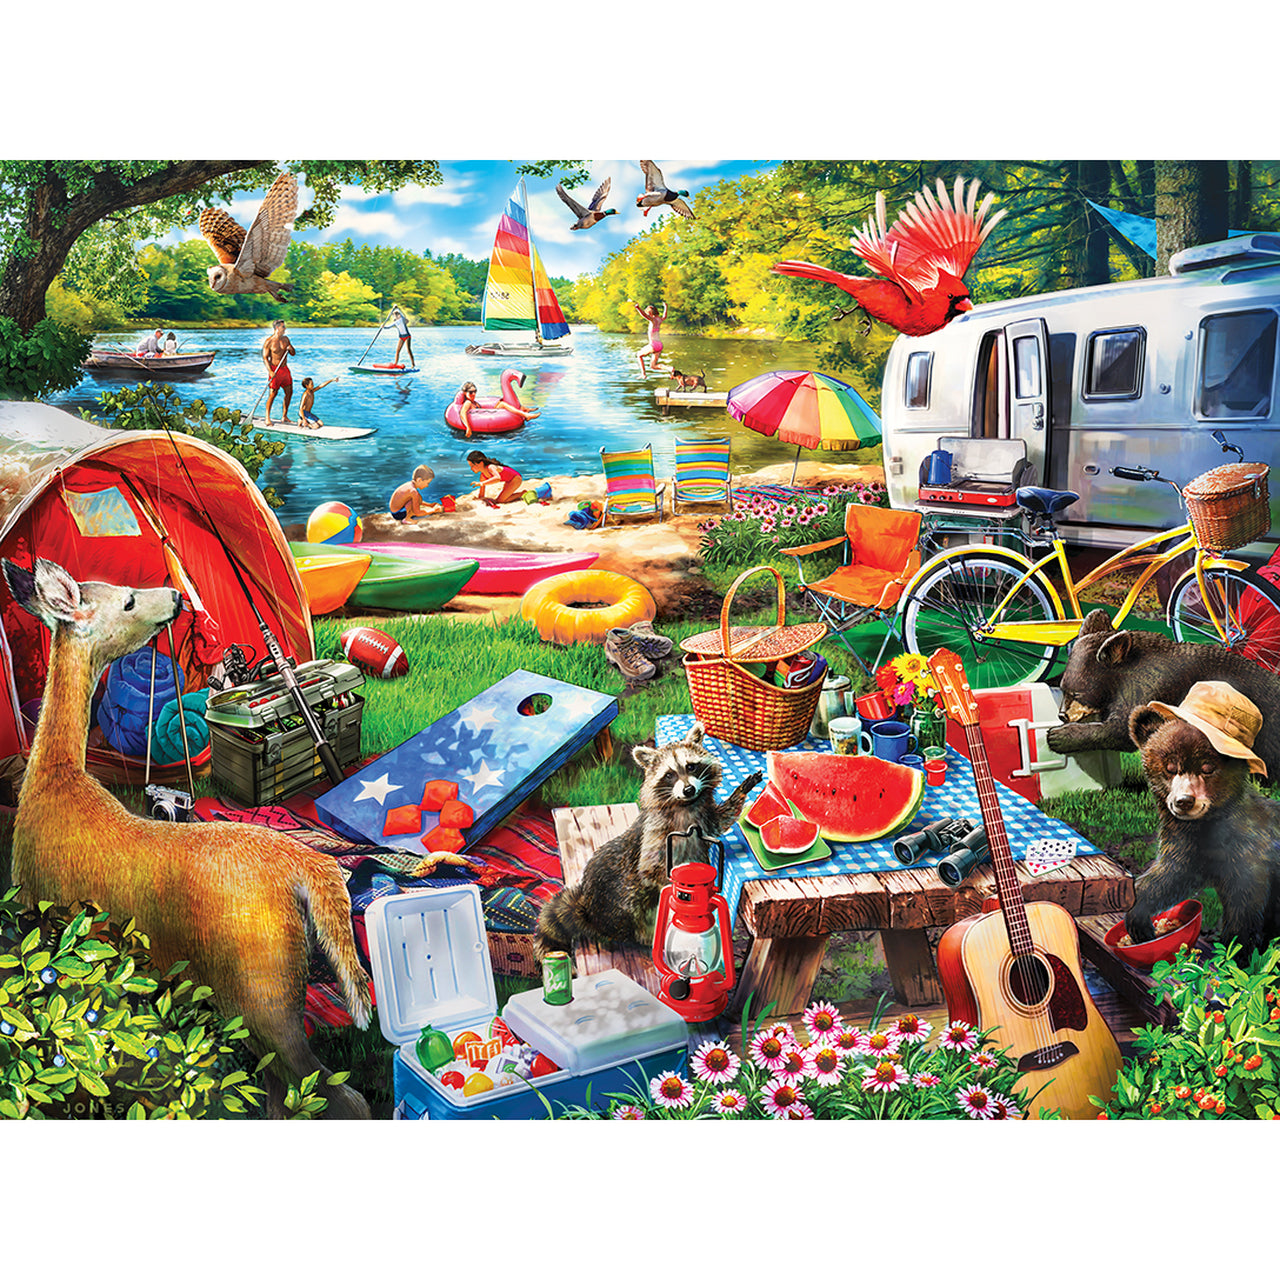 Campside - Little Rascals 300 Piece EZ Grip Puzzle by Masterpieces